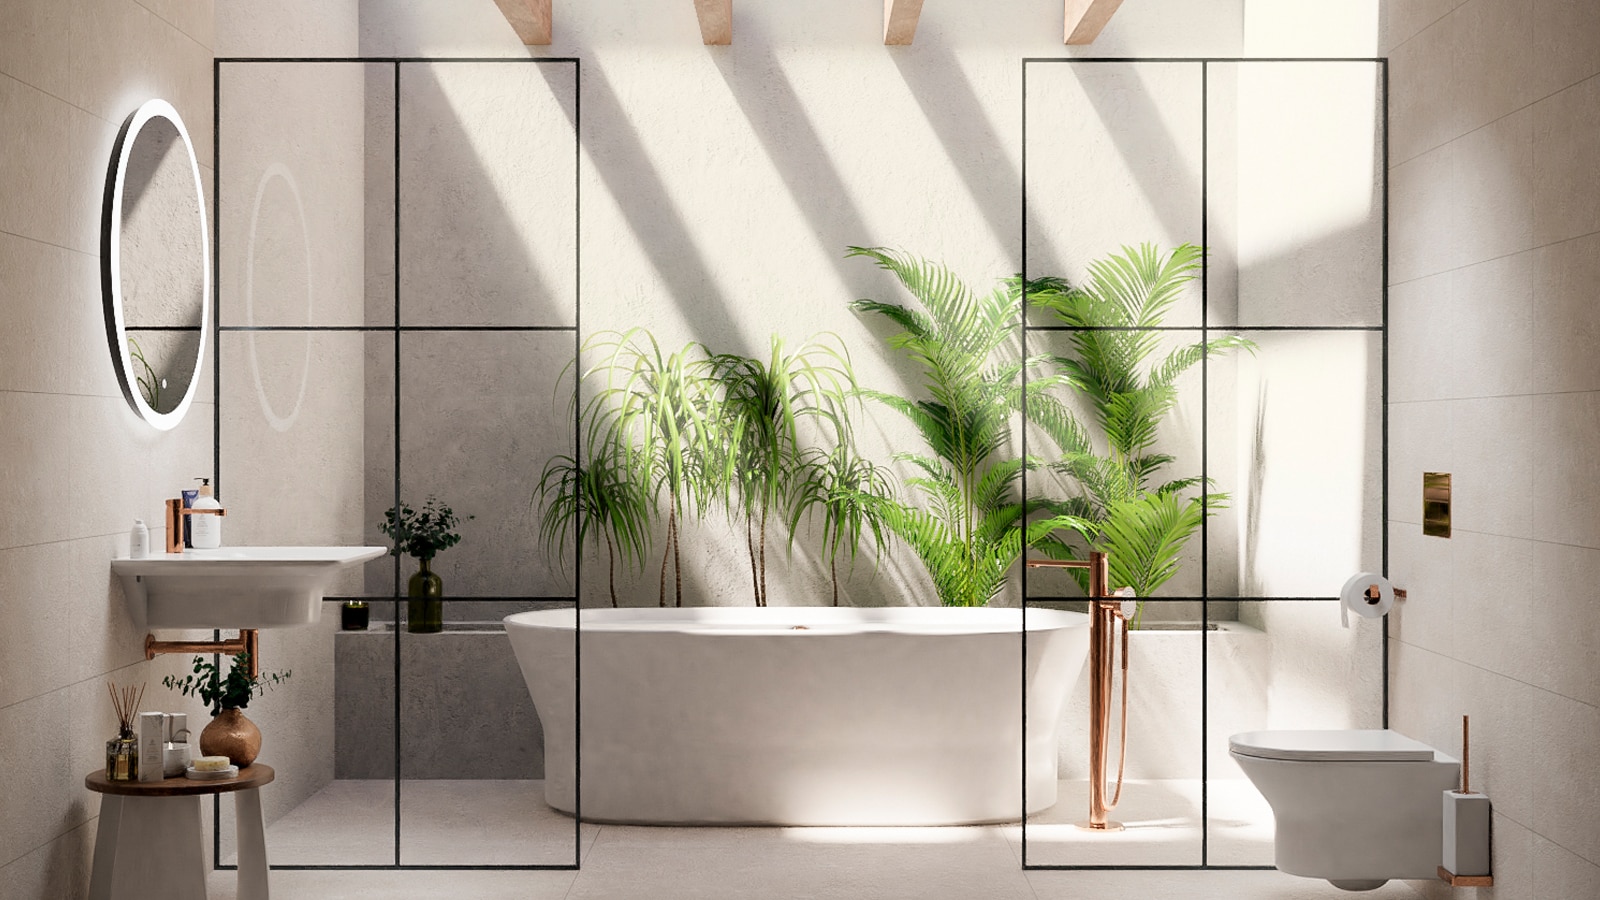 Foster + Partners предлагают новую интерпретацию коллекции Tono от Noken, представляя более функциональную продукцию для ванной комнаты